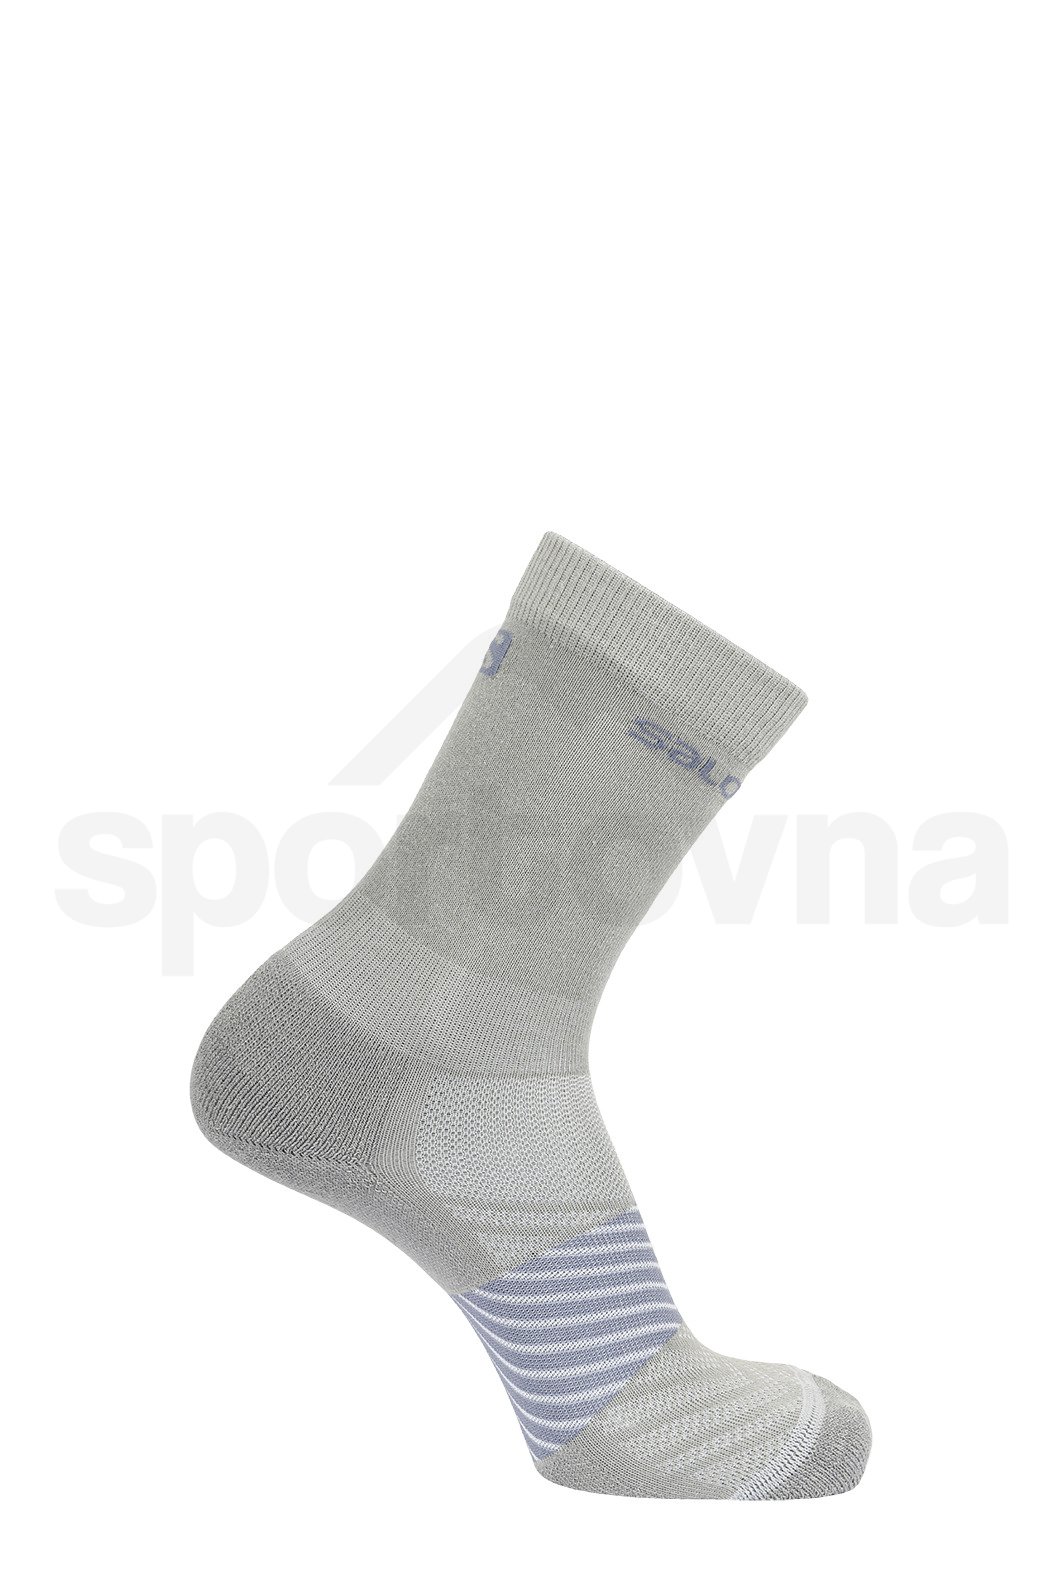 Ponožky Salomon XA 2-PACK - šedá/růžová